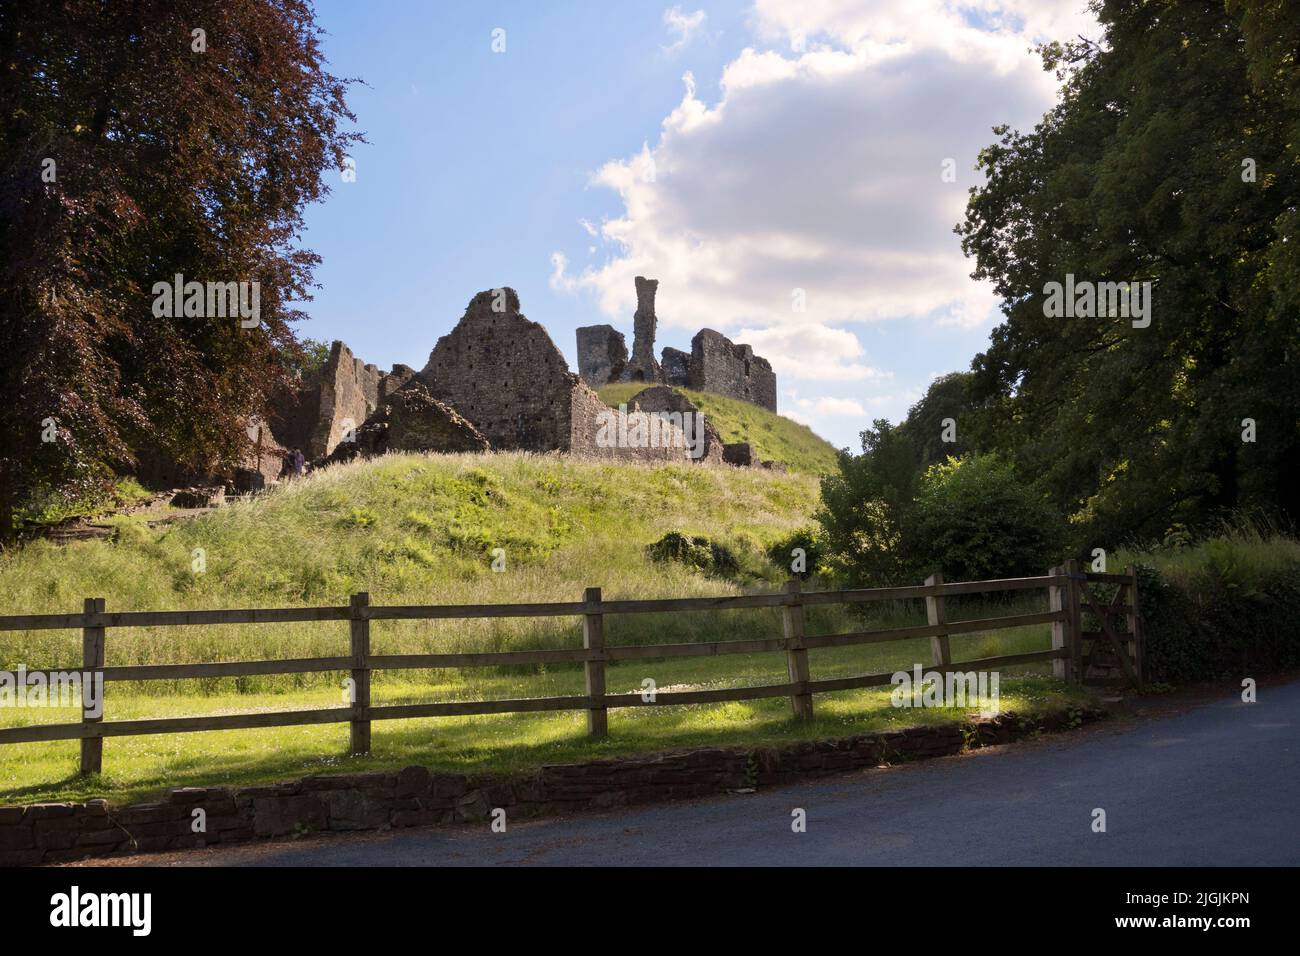 Castello di Okehampton, Devon. Il più grande castello di Devon, iniziò come motte e bailey dopo la conquista normanna. Foto Stock